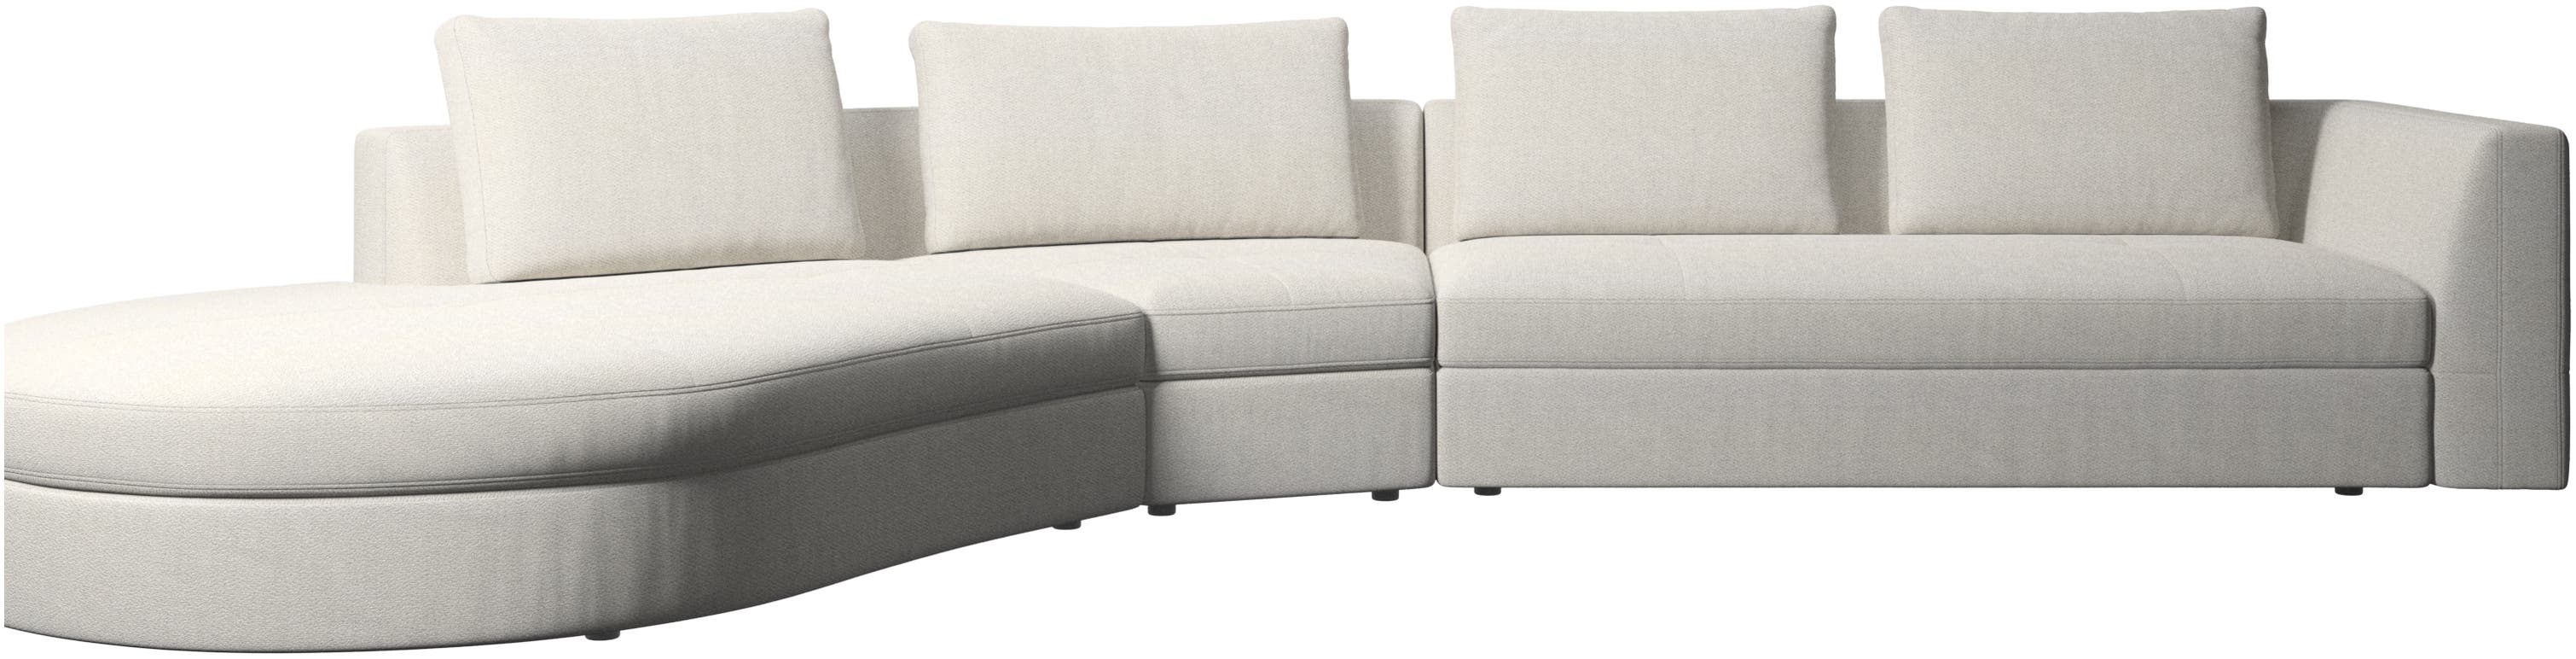 Bergamo Sofa com módulo de descanso redondo, esquerdo